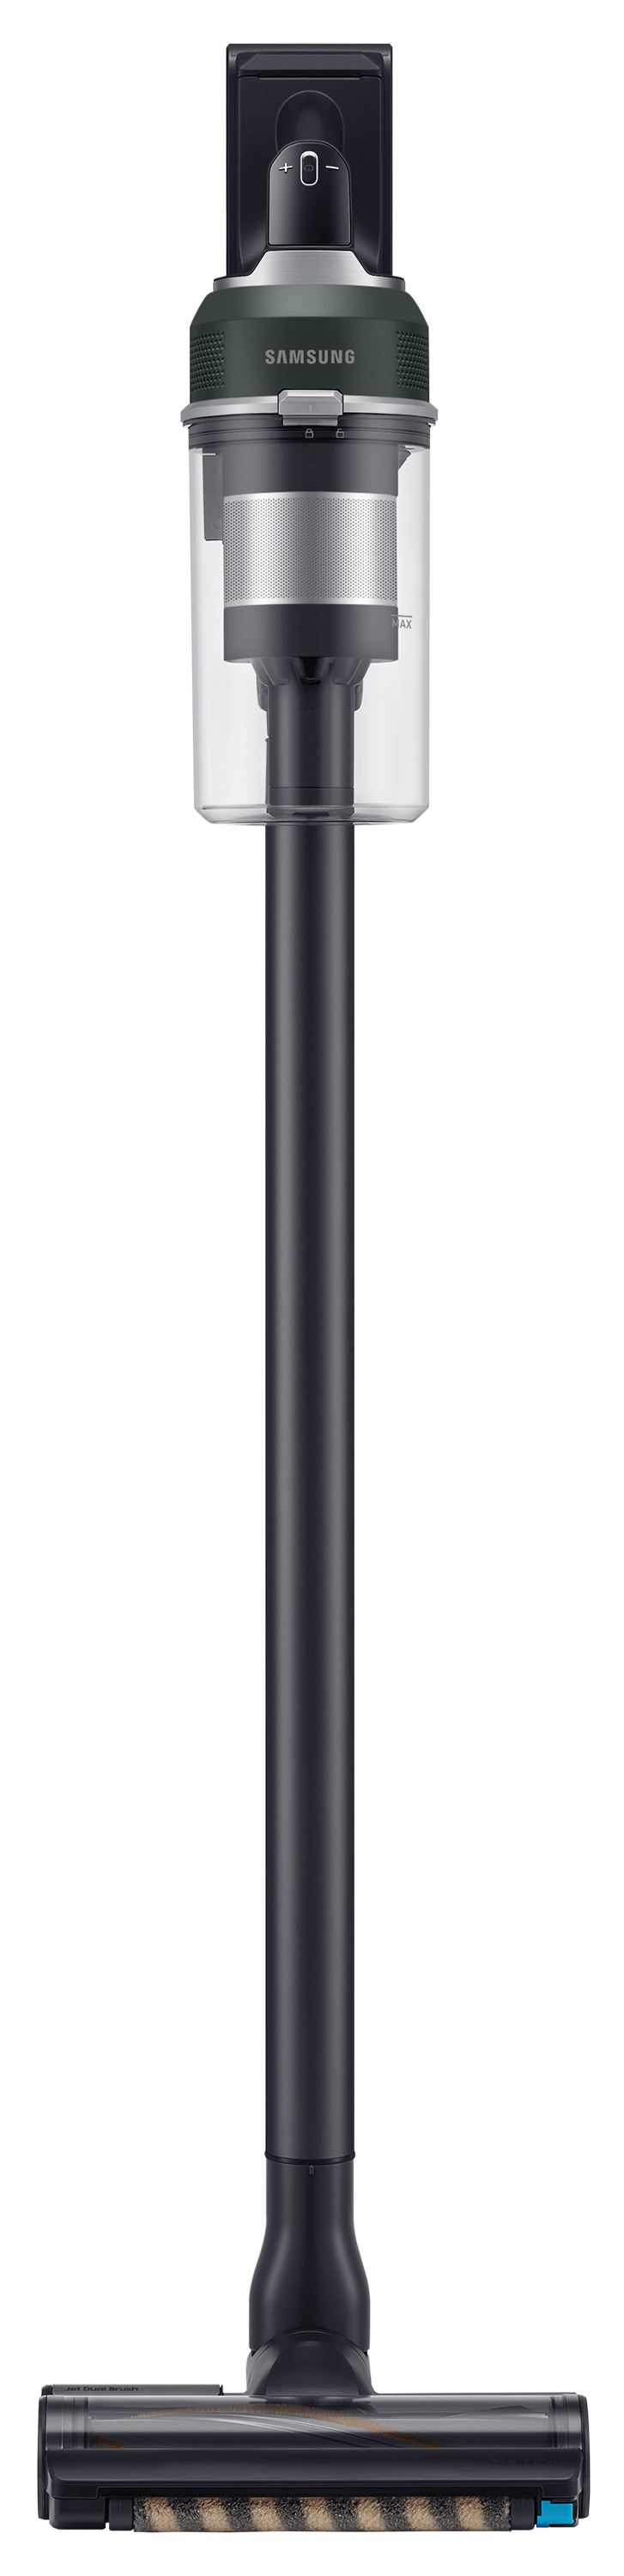 Пылесос Samsung VS20C8522TN/UK в интернет-магазине, главное фото